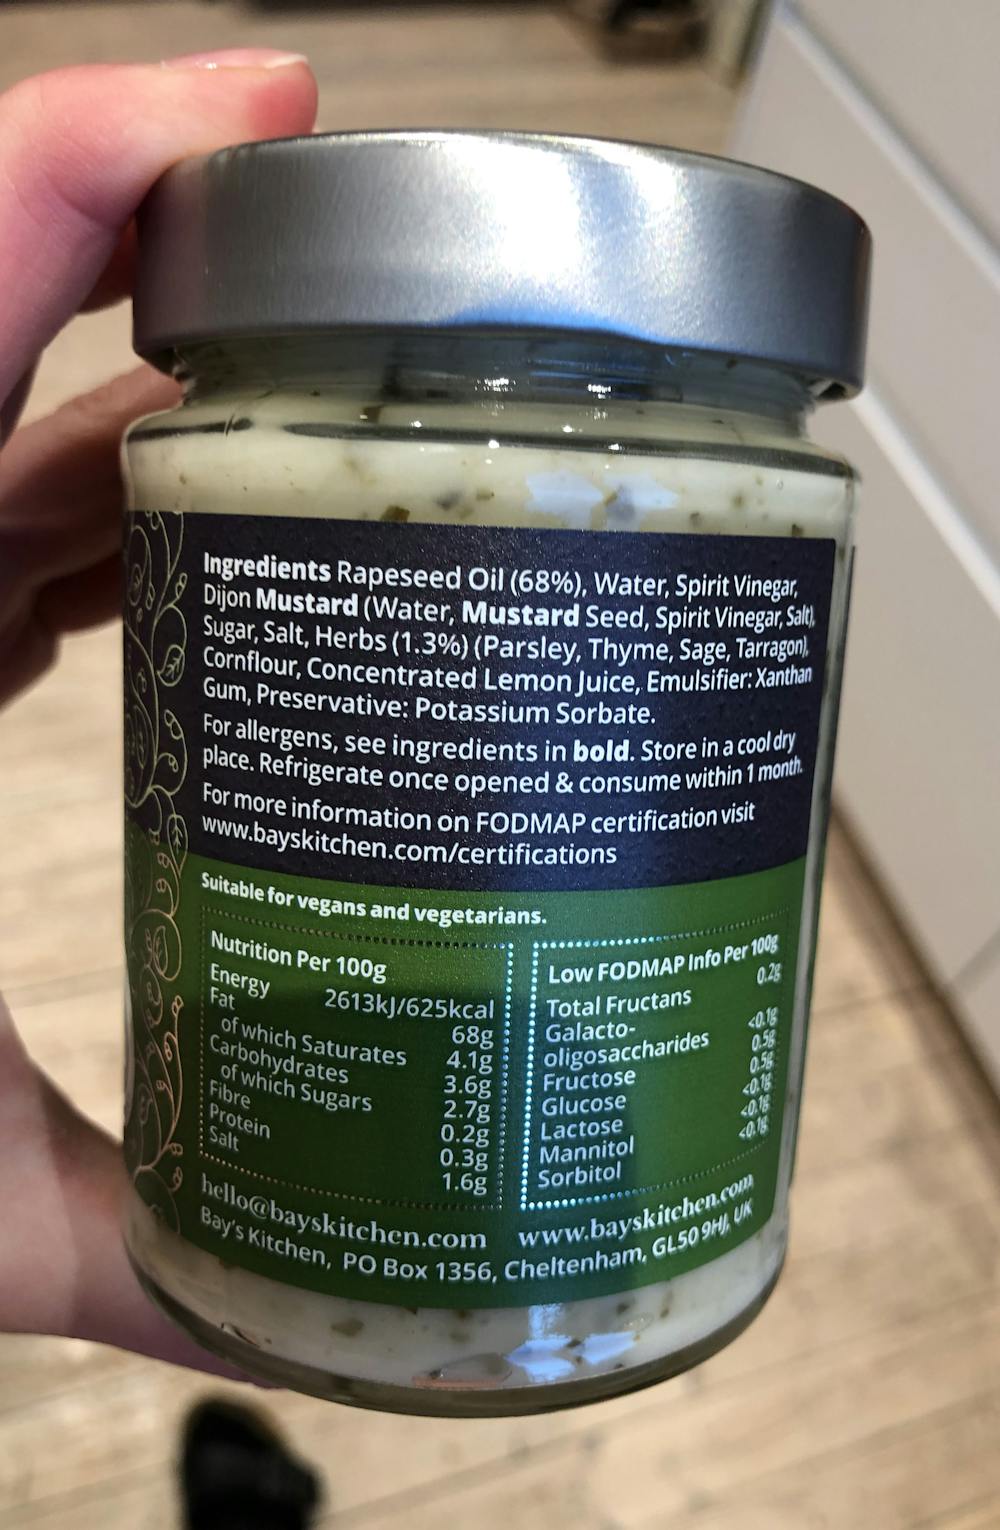 Ingrediensliste - Garden Herb, vegan mayonnaise, Bay's Kitchen